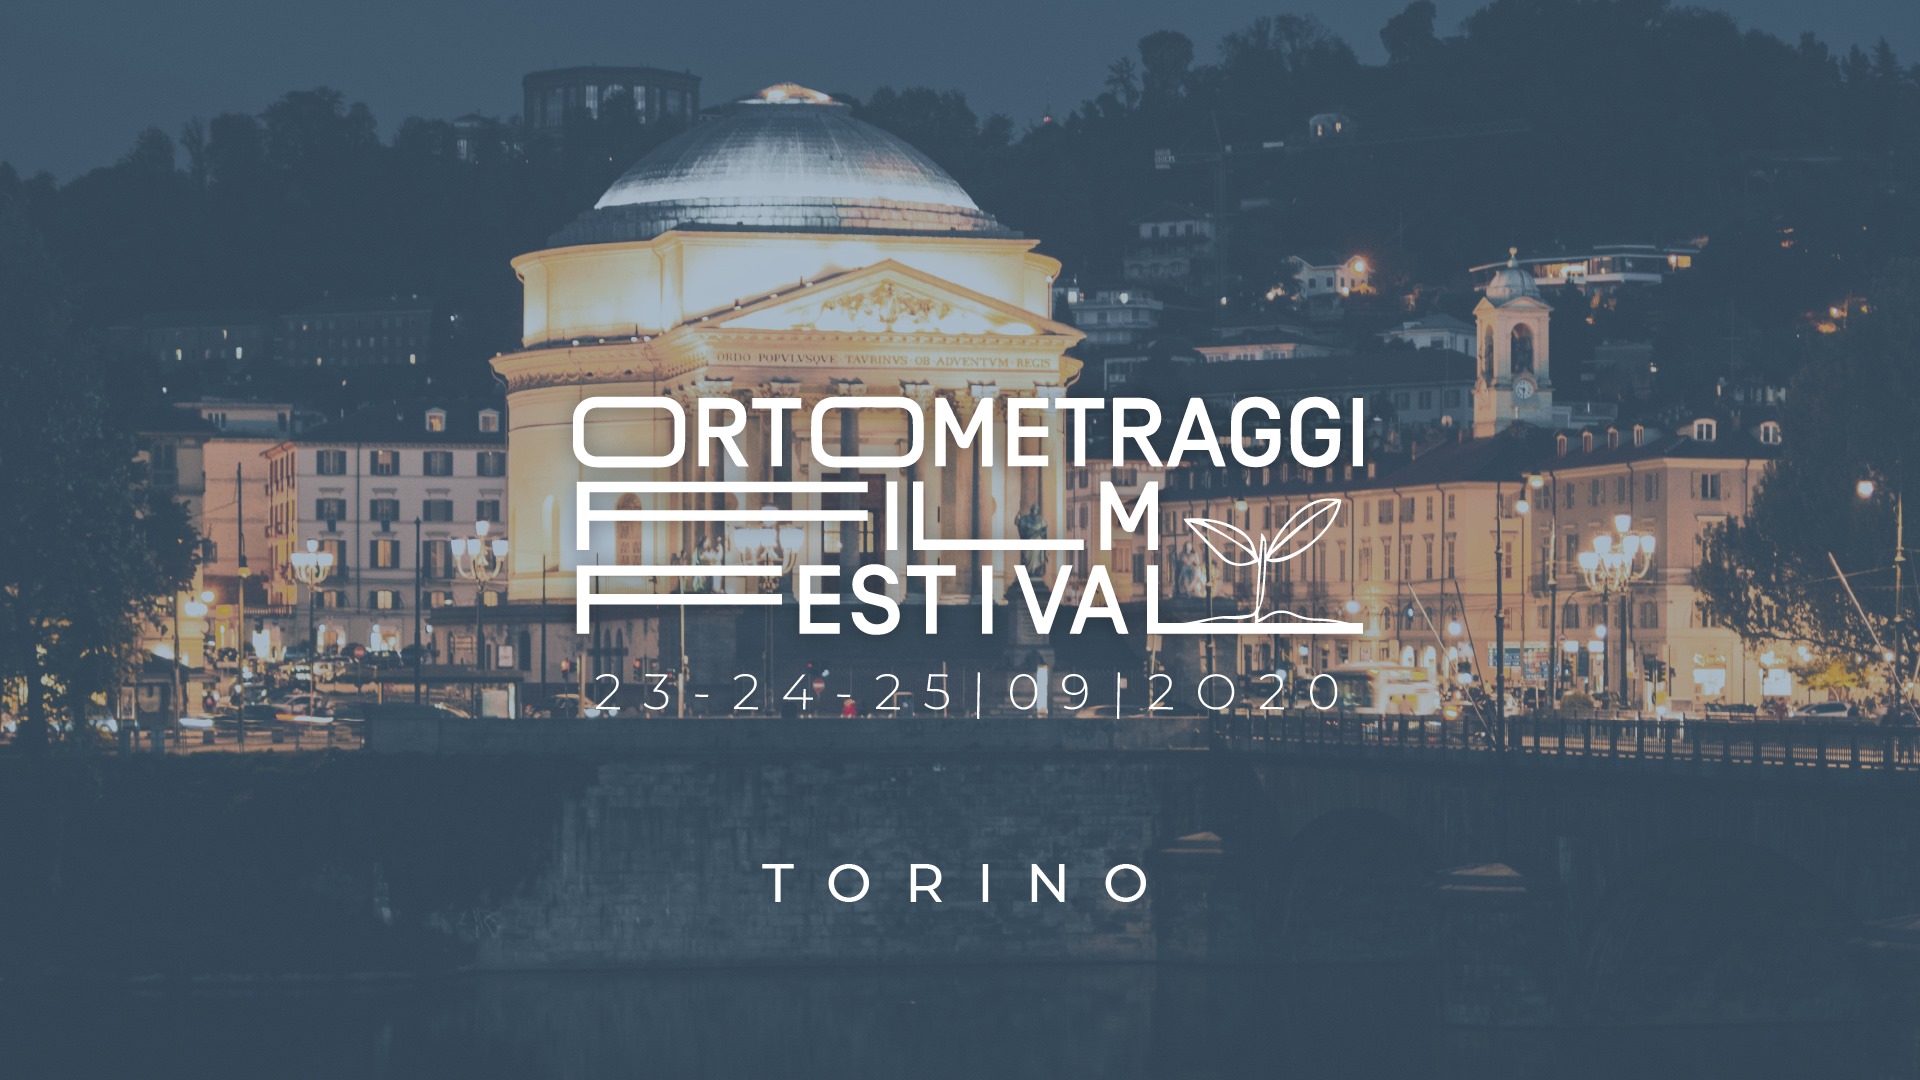 Al via la il terzo Ortometraggi Film Festival 2020 a Torino